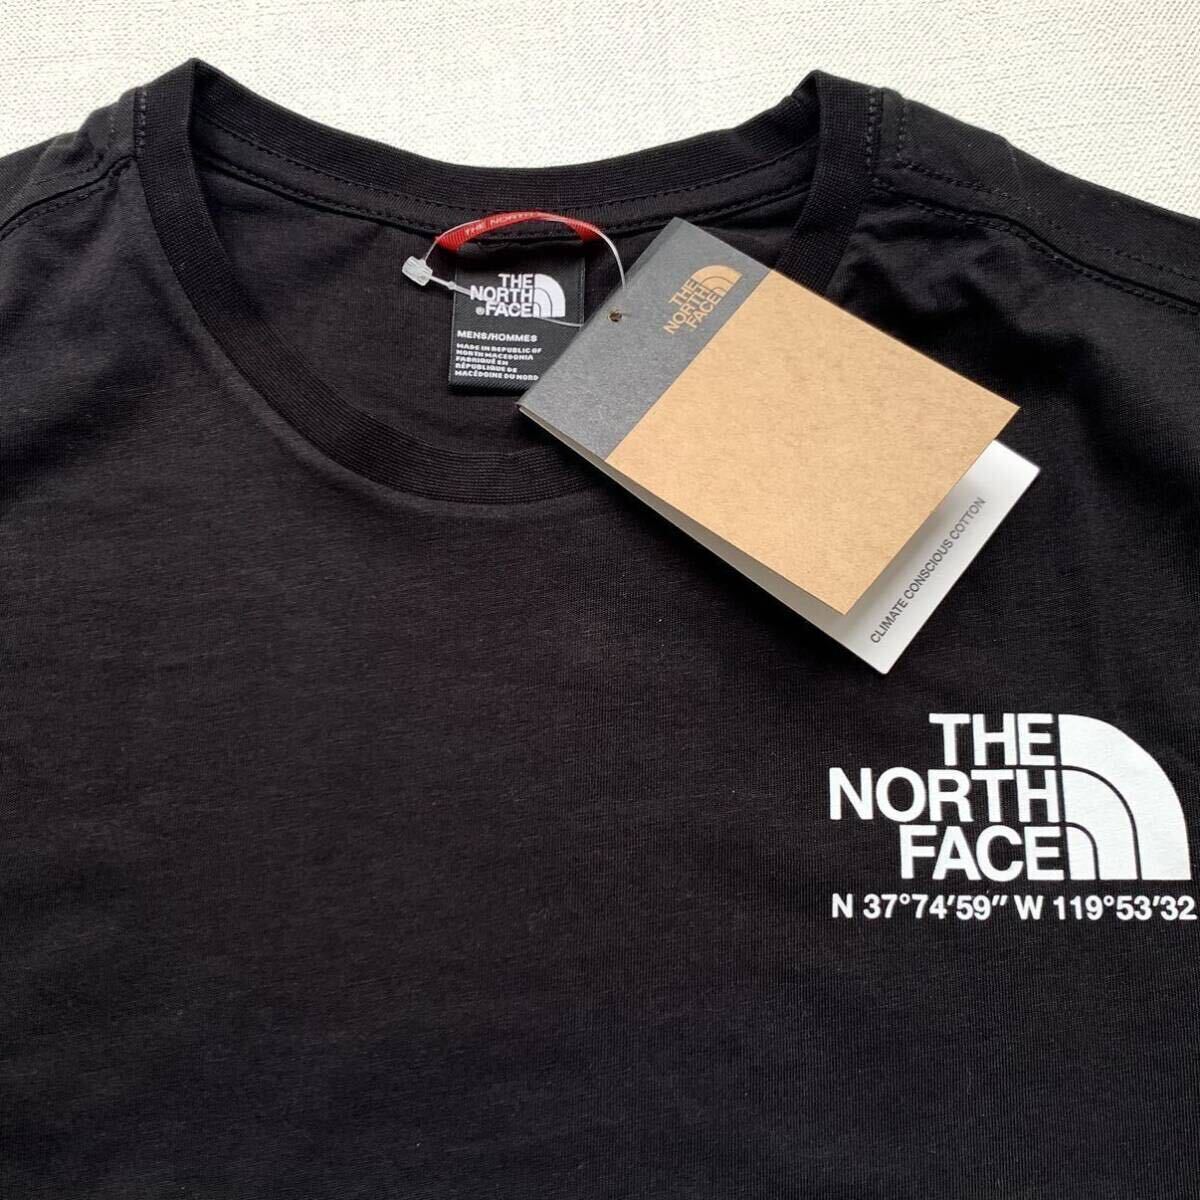 XL 新品 ノースフェイス THE NORTH FACE COORDINATES TEE ロゴ ハーフドーム 座標 半袖 Tシャツ 黒 メンズ 海外企画 日本未入荷 送料無料の画像5